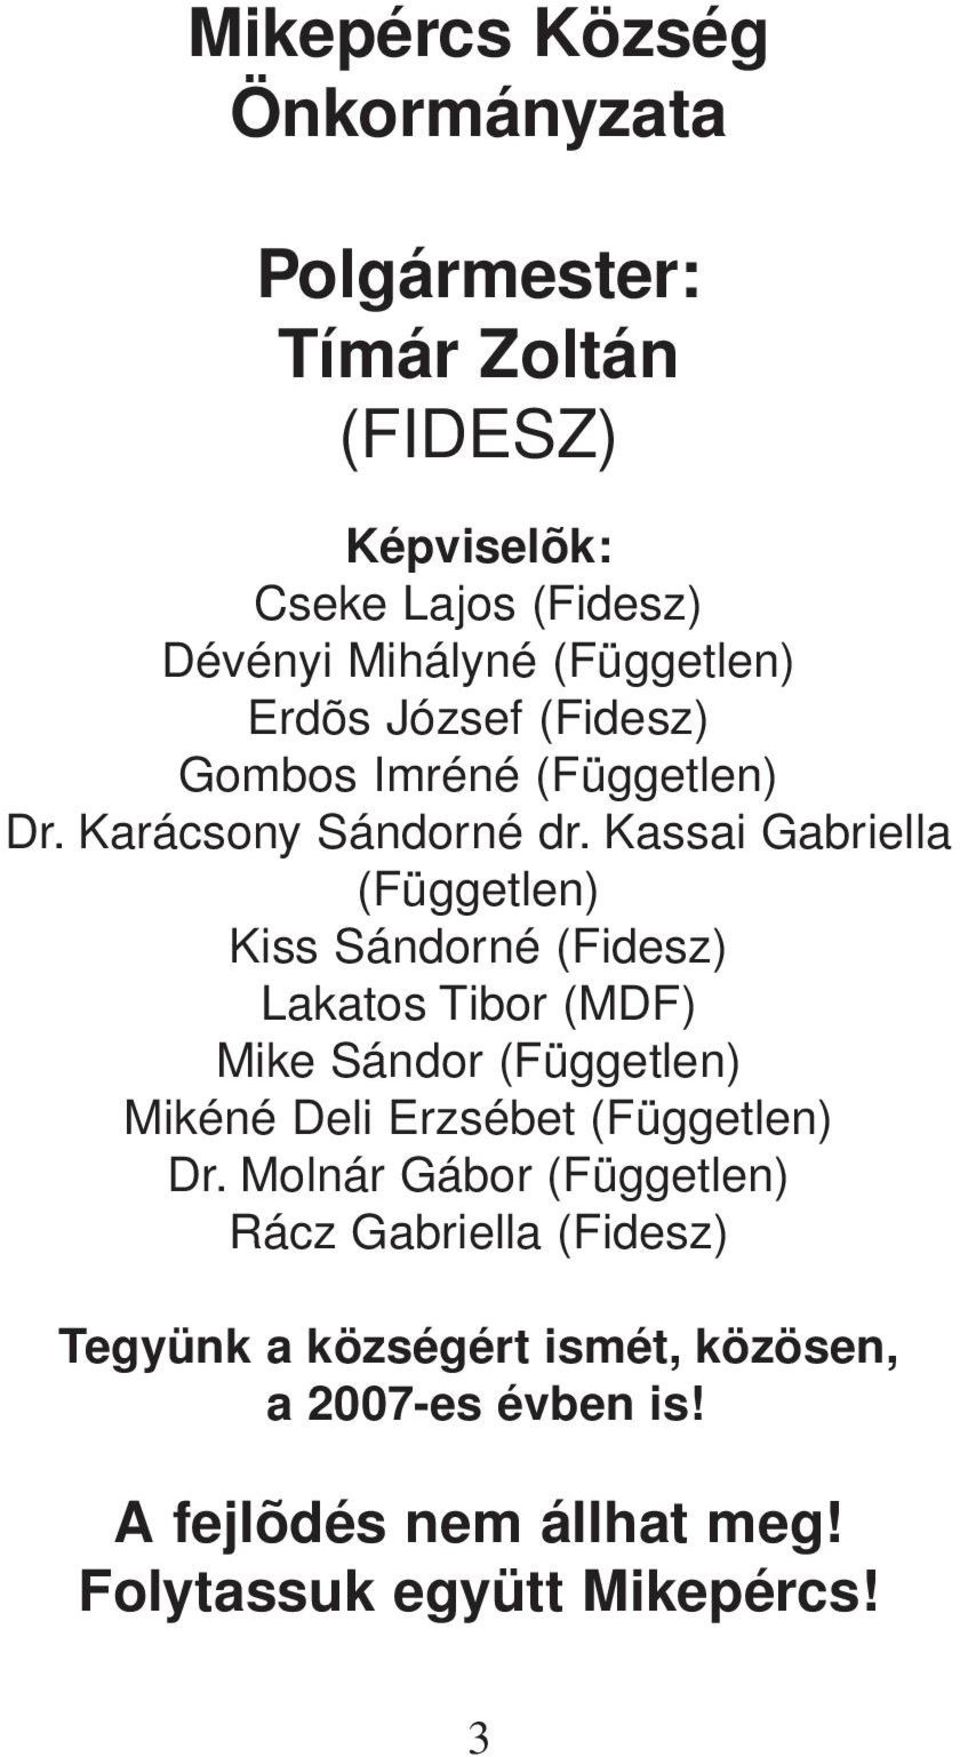 assai Gabriella (Független) iss Sándorné (Fidesz) Lakatos Tibor (MDF) Mike Sándor (Független) Mikéné Deli Erzsébet